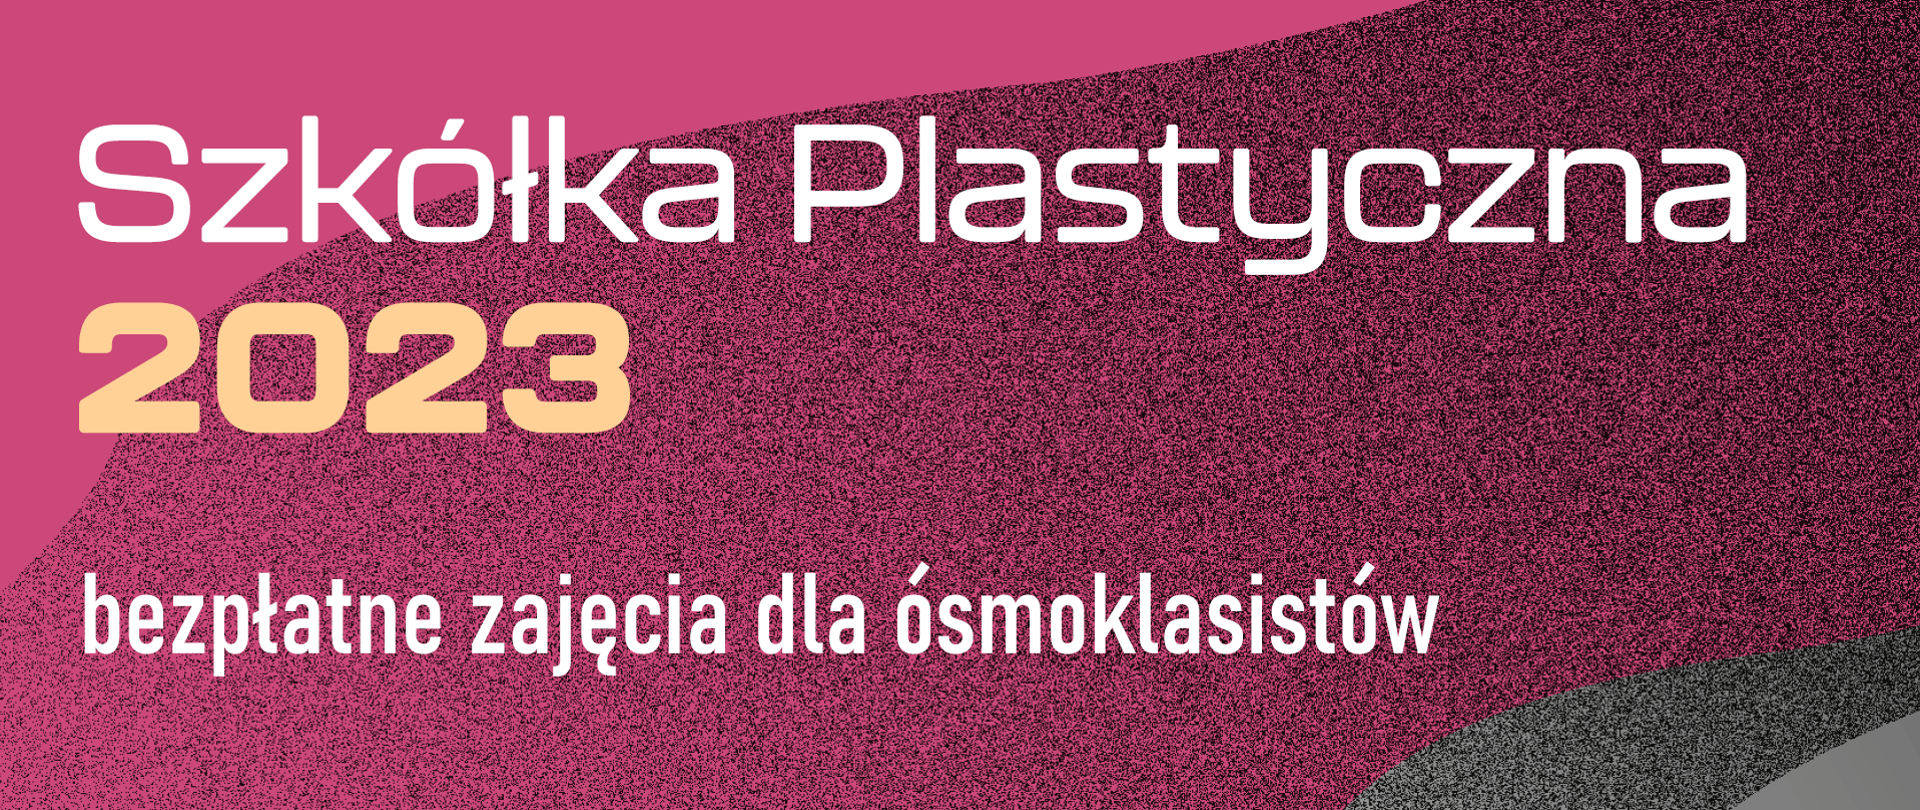 Grafika z napisem "Szkółka plastyczna 2023 bezpłatne zajęcia dla ósmoklasistów" 